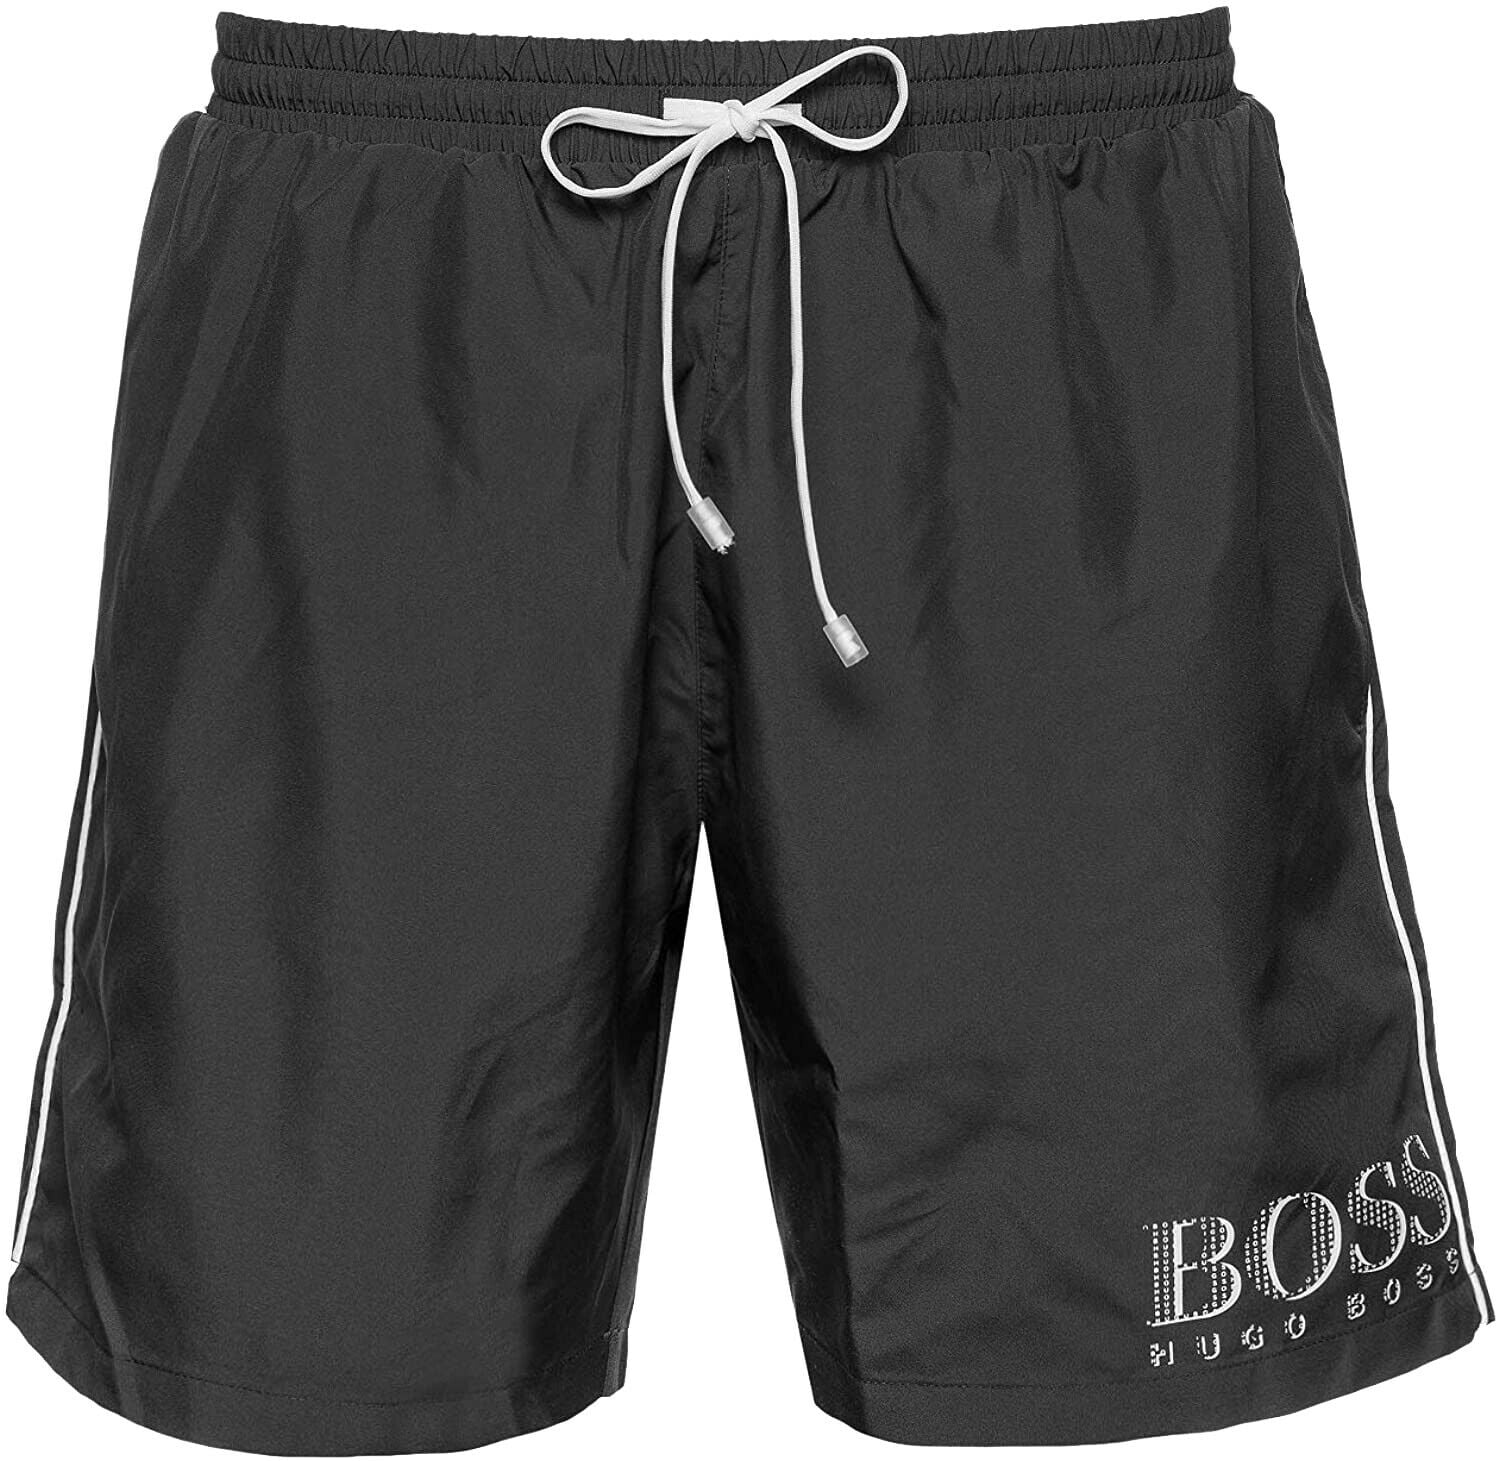 Vugge brutalt Teasing New Boss Hugo Boss Men's Starfish BM Swim Shorts, Black, Medium 5159-10 -  Walmart.com